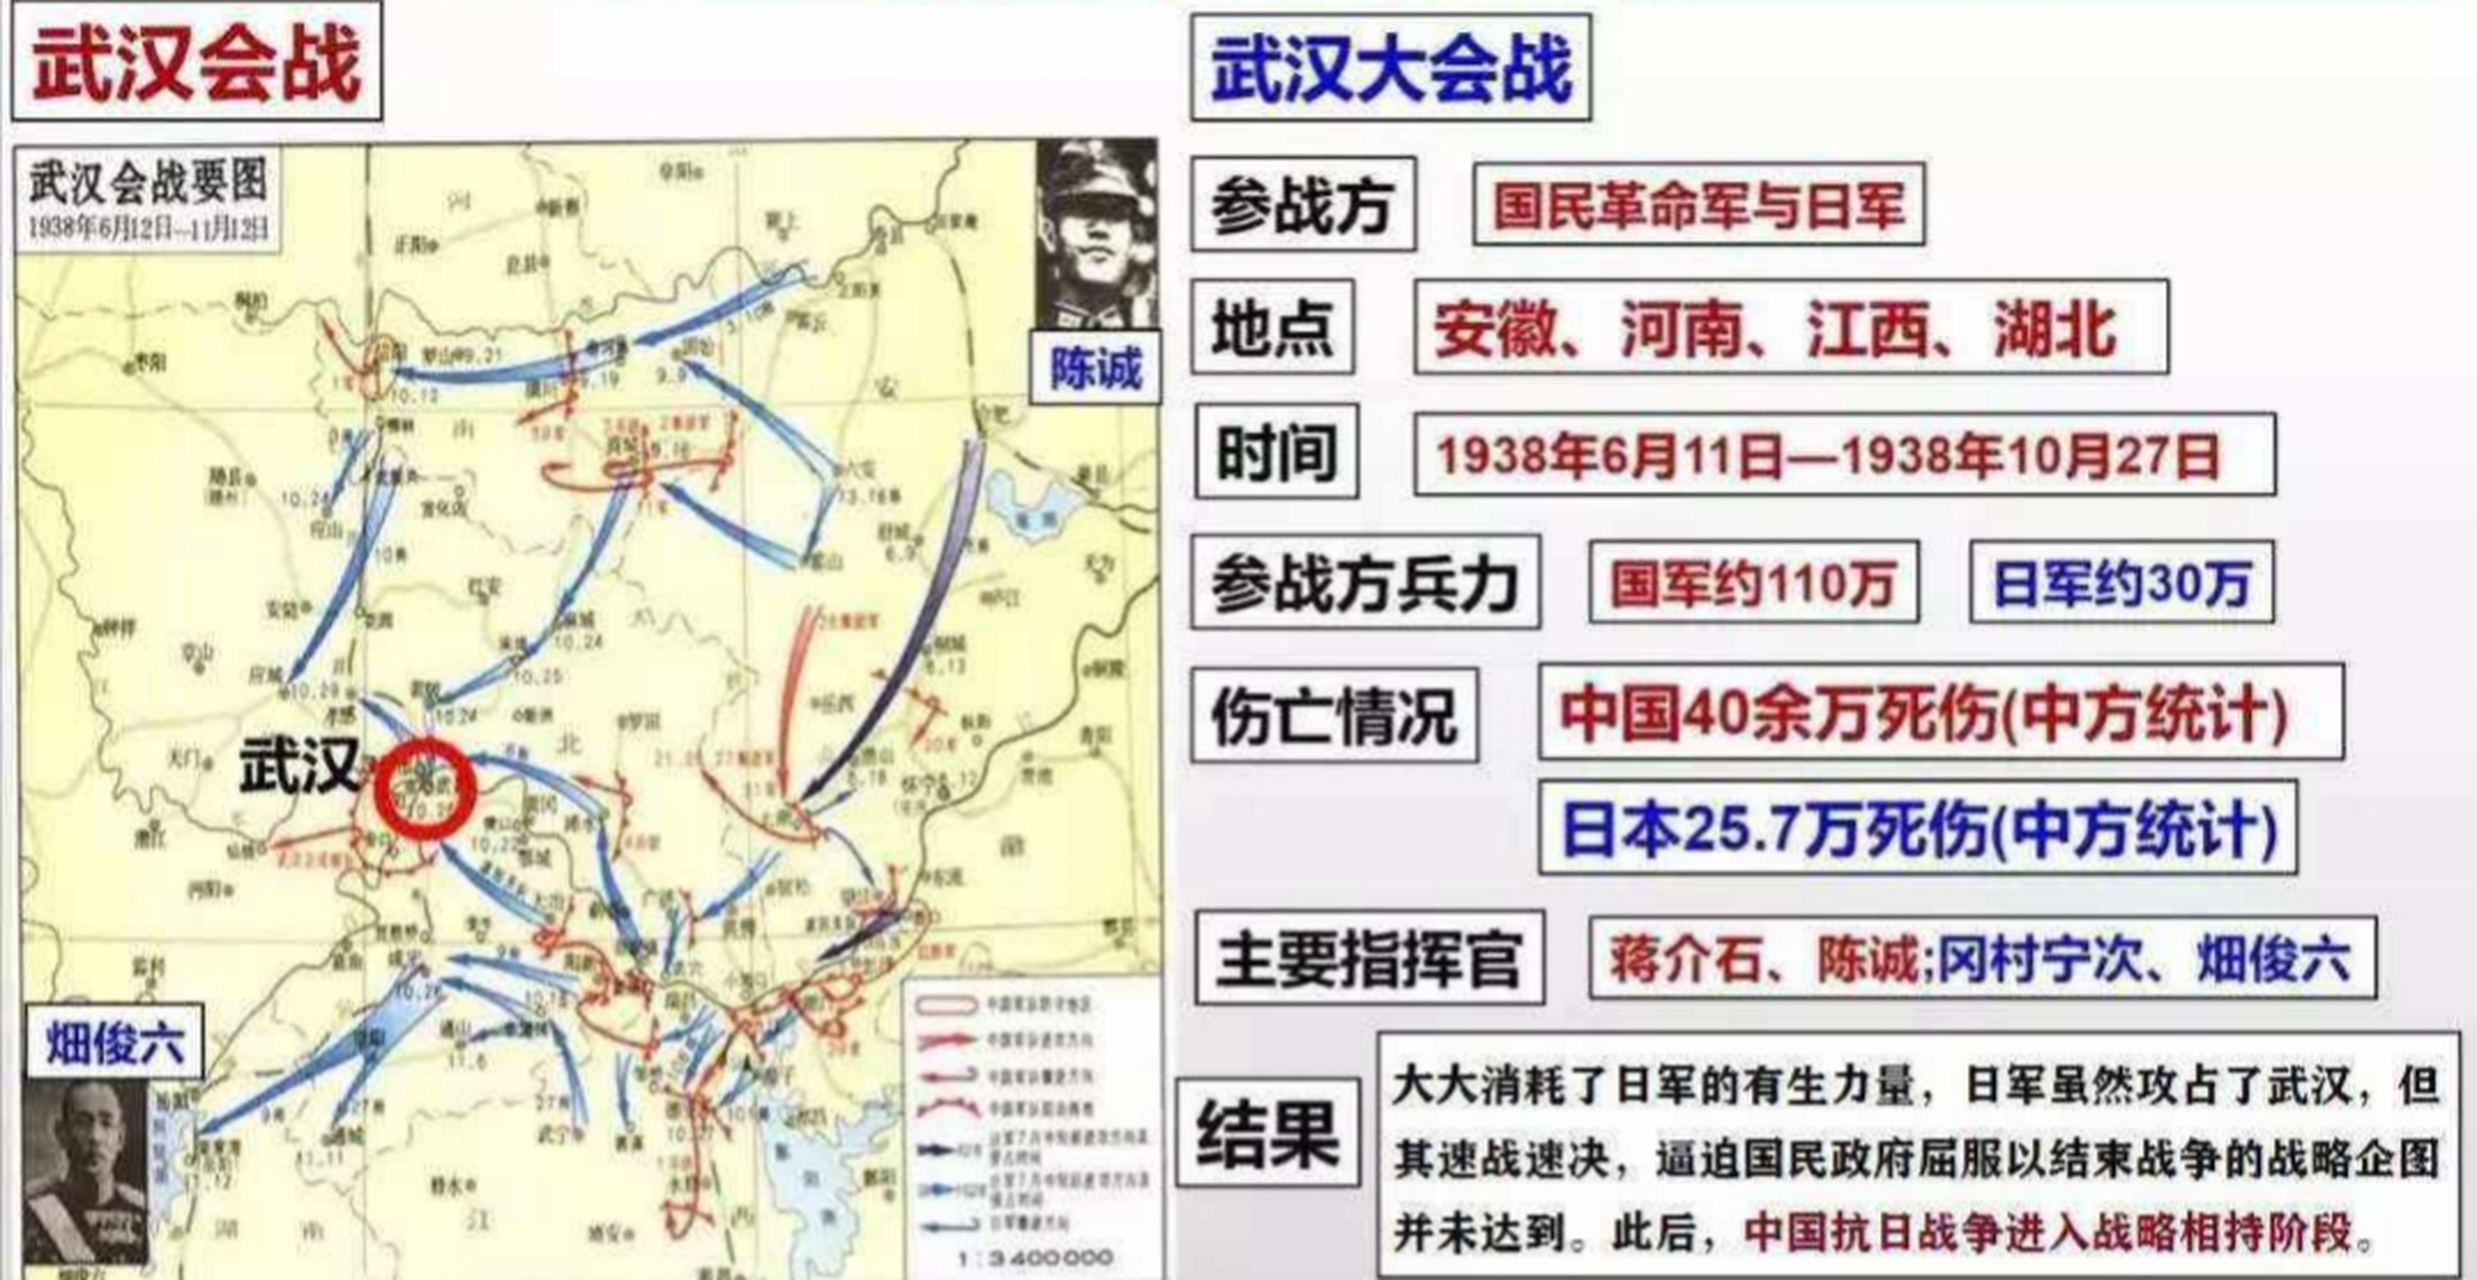 据战后统汁,武汉会战期间,中国军队伤亡40余万人,日军伤亡257万人